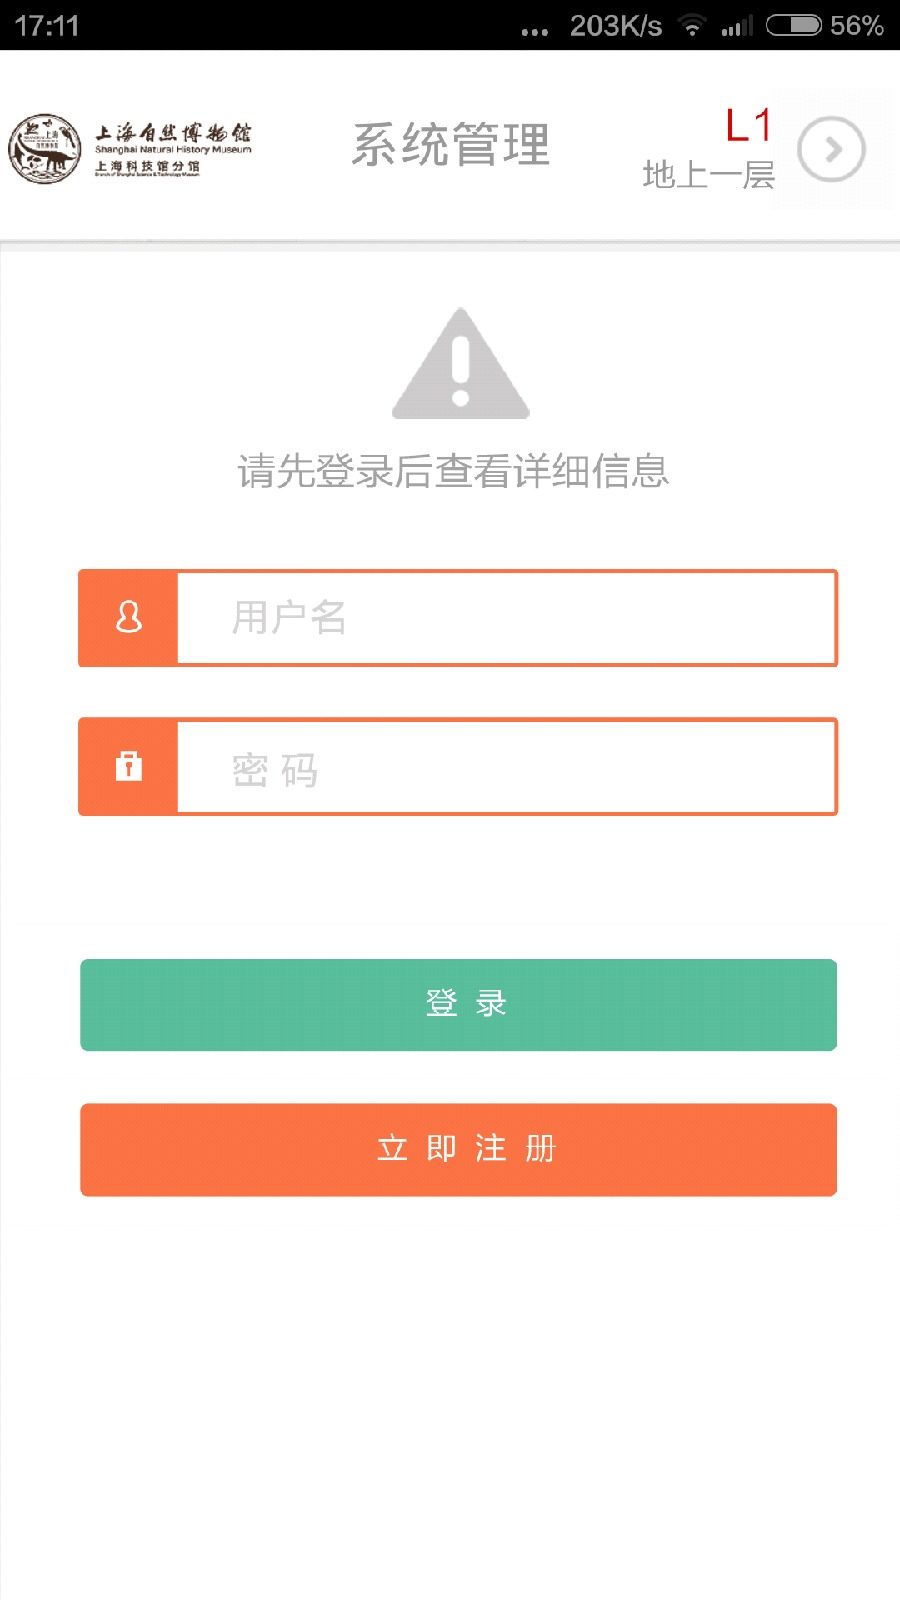 上海自然博物馆app iPhone版 v2.6 苹果越狱版1